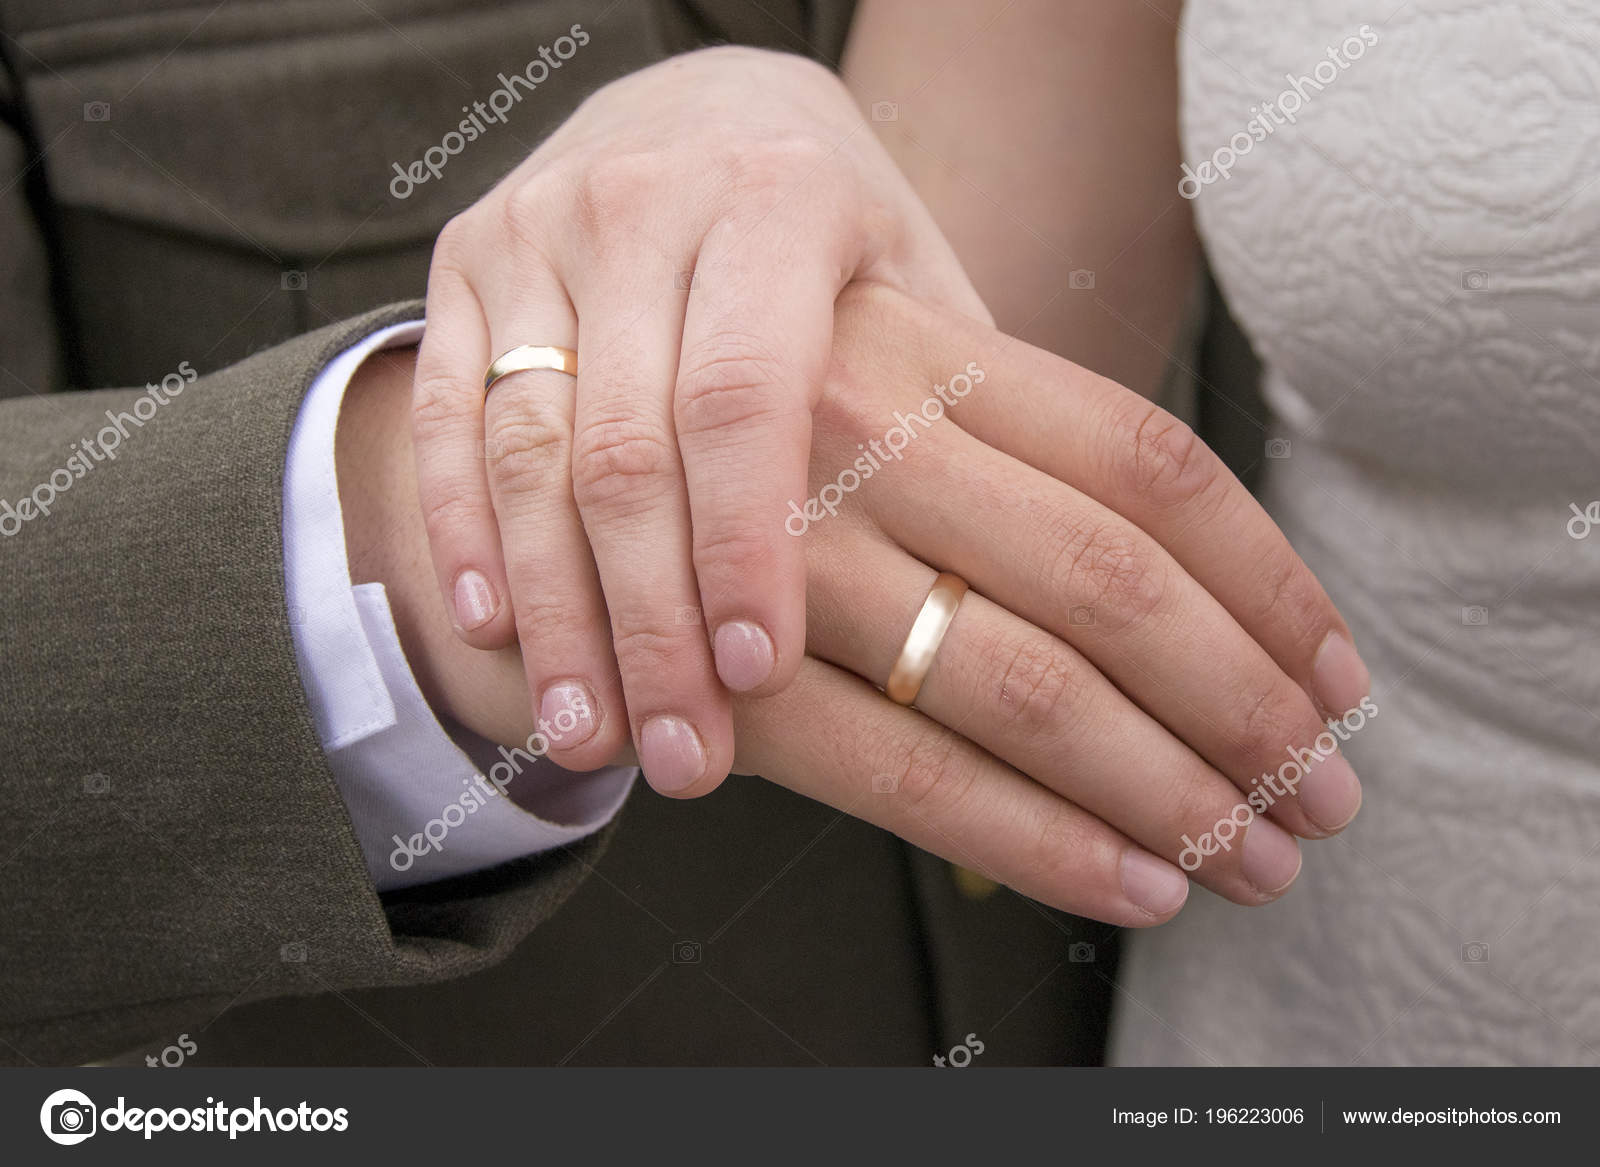 Русские жены мужа пальцем. Обручальное кольцо на руке мужчины. Золотые обручальные кольца на руках. Мужское обручальное кольцо на пальце. Мужские обручальные кольца на руке.